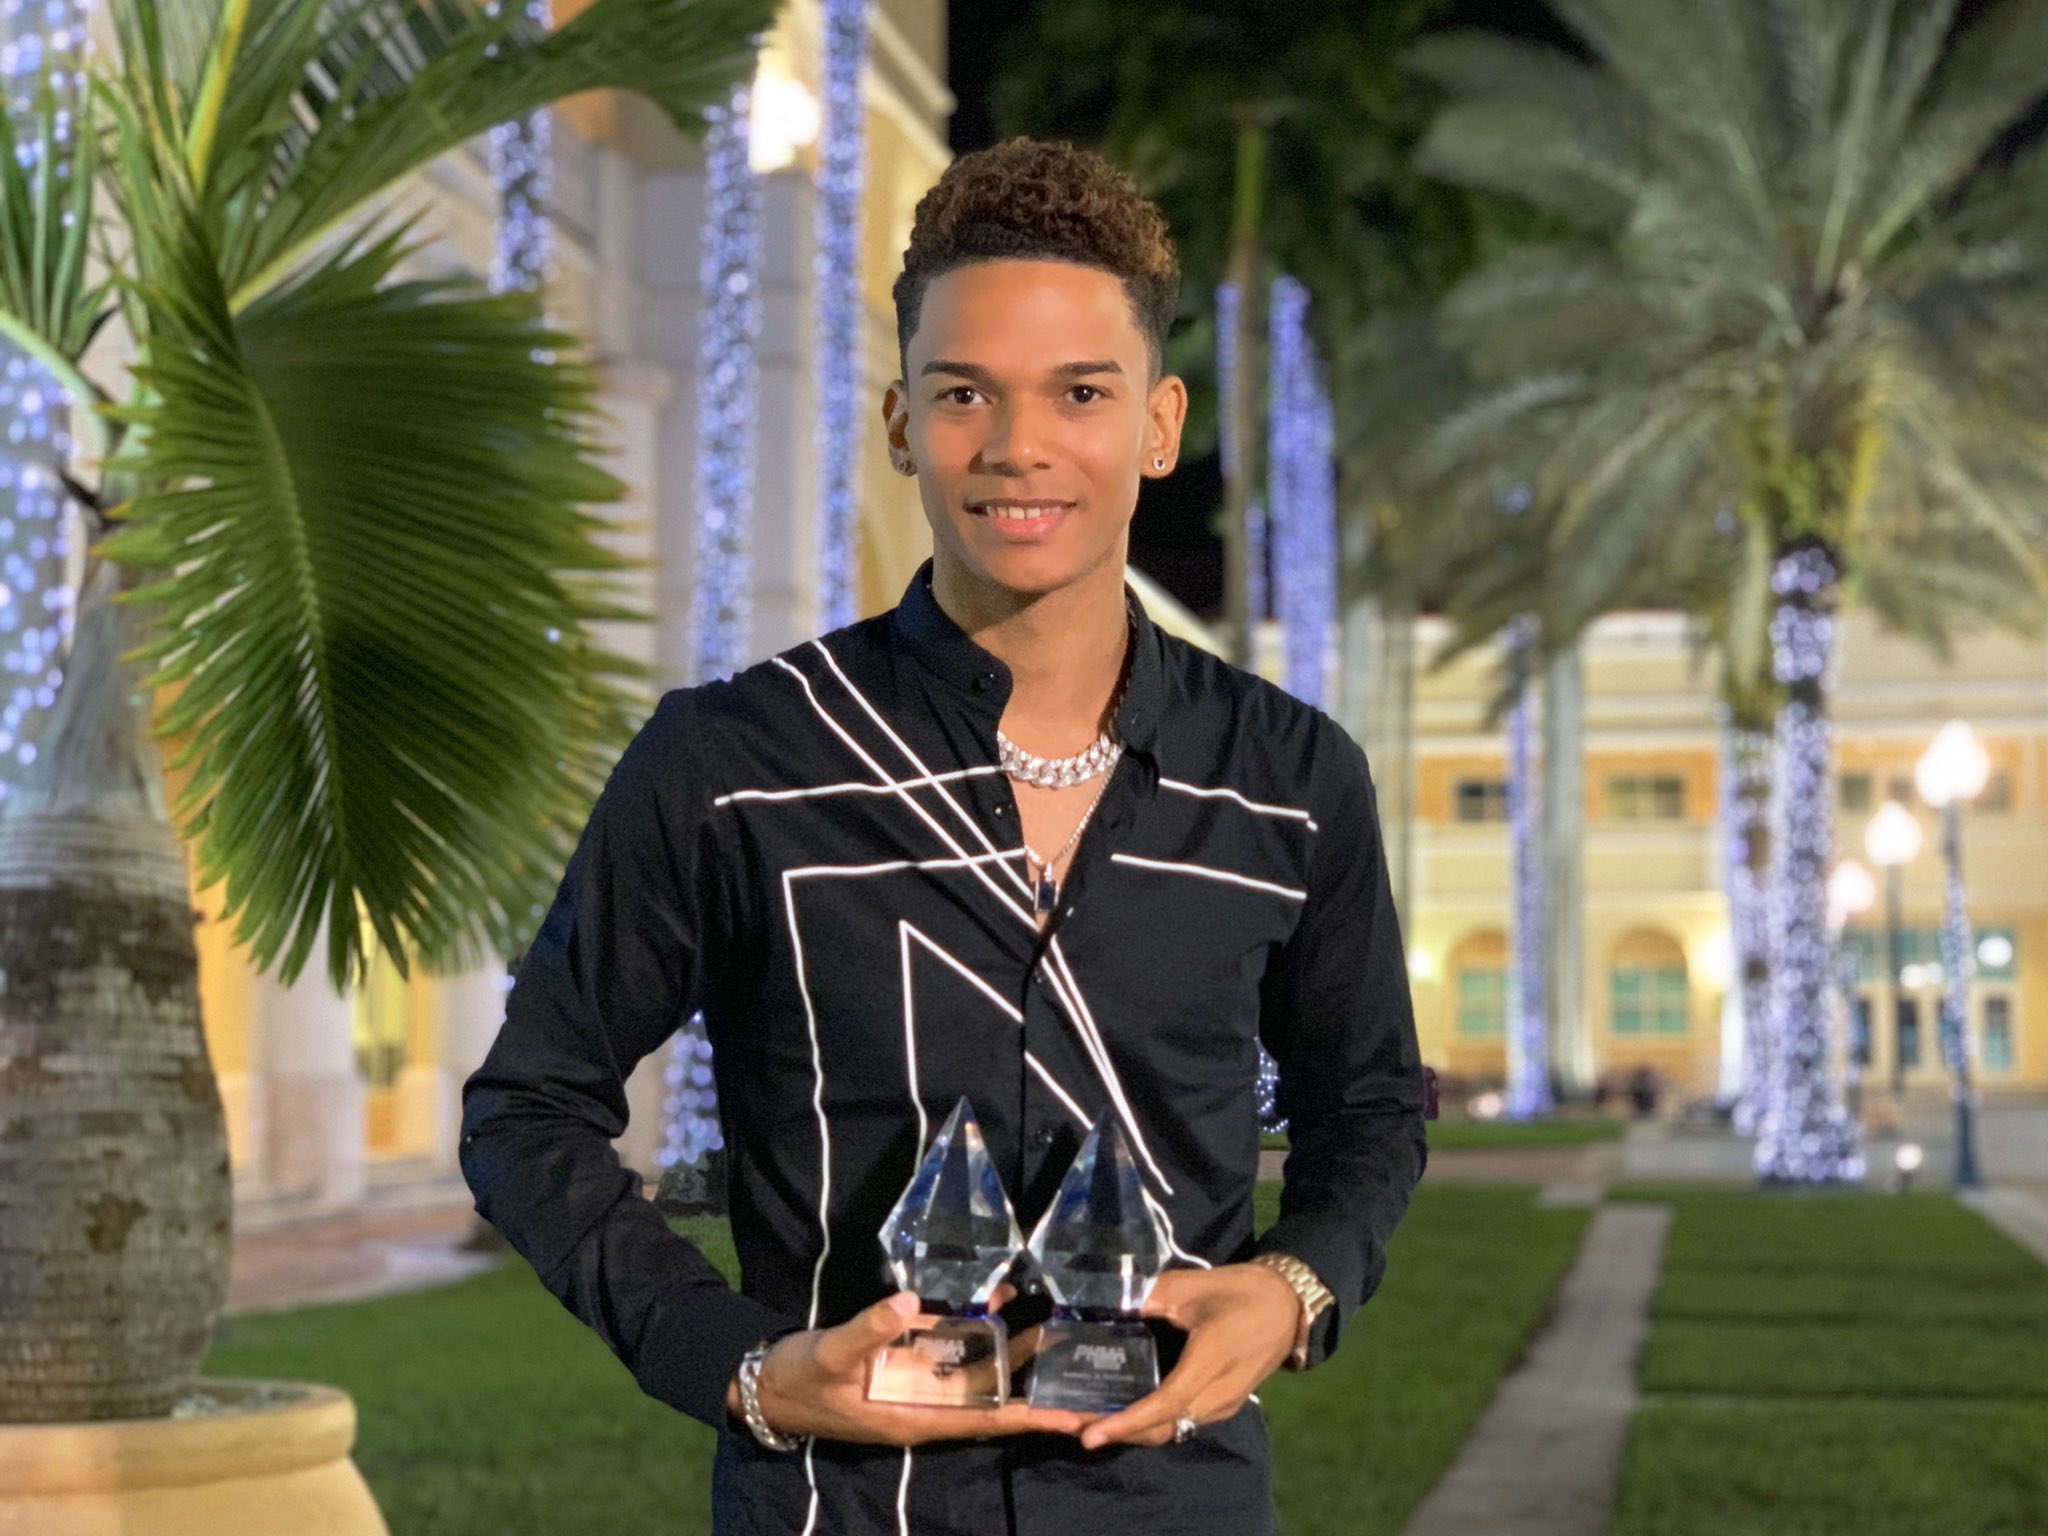     Antonny Drew remporte deux awards aux Haitian Music Awards à Miami

